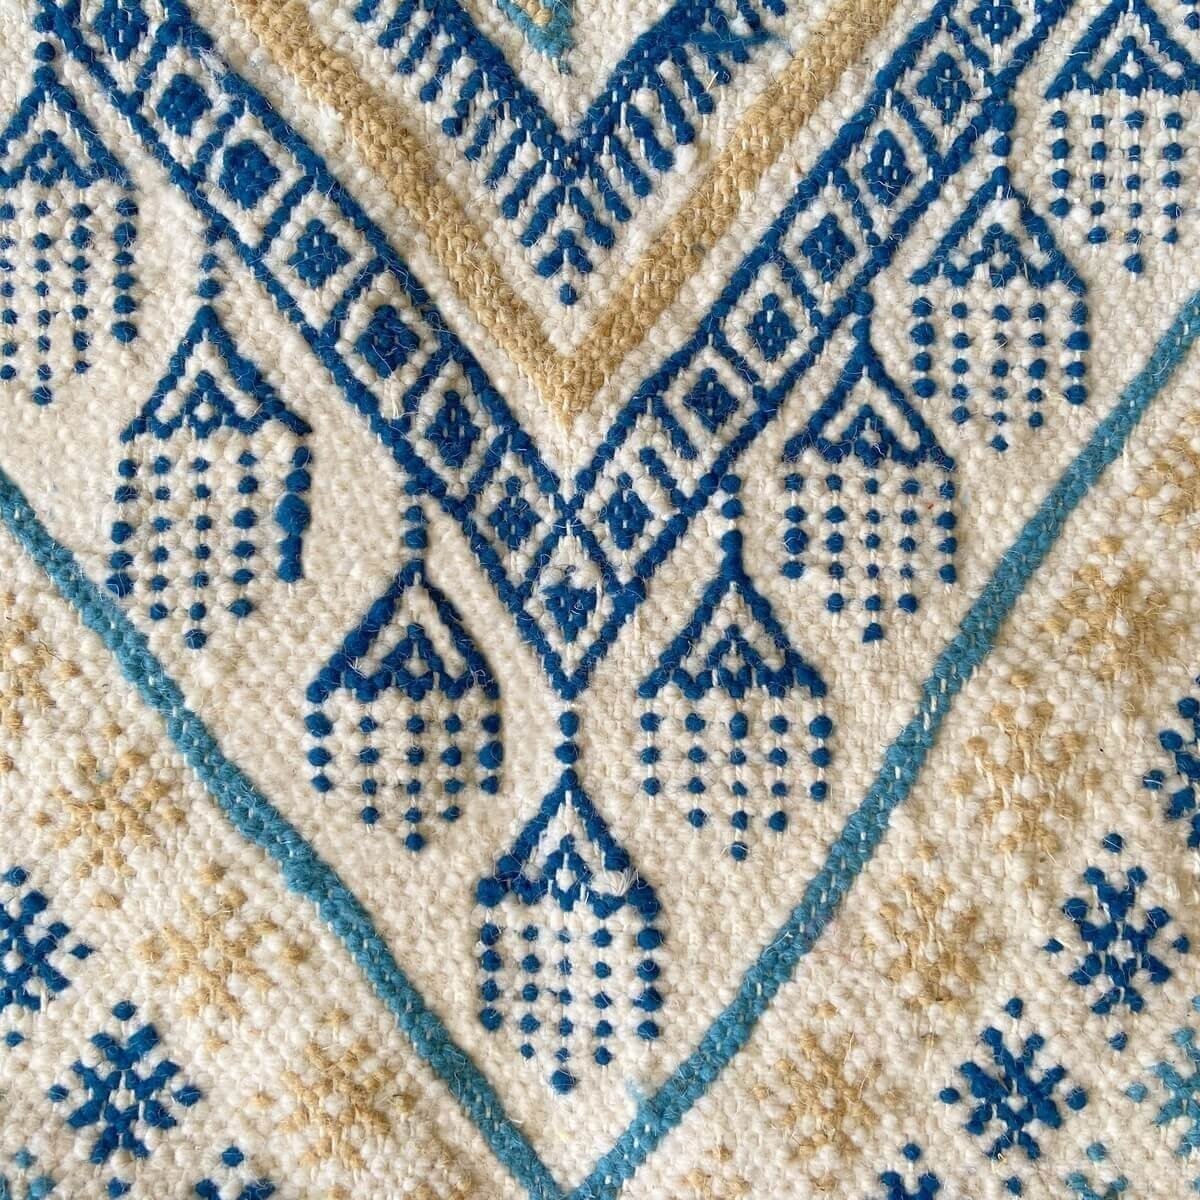 Berber tapijt Tapijt Margoum Alfatha 120x190 Blauw/Wit (Handgeweven, Wol, Tunesië) Tunesisch Margoum Tapijt uit de stad Kairouan